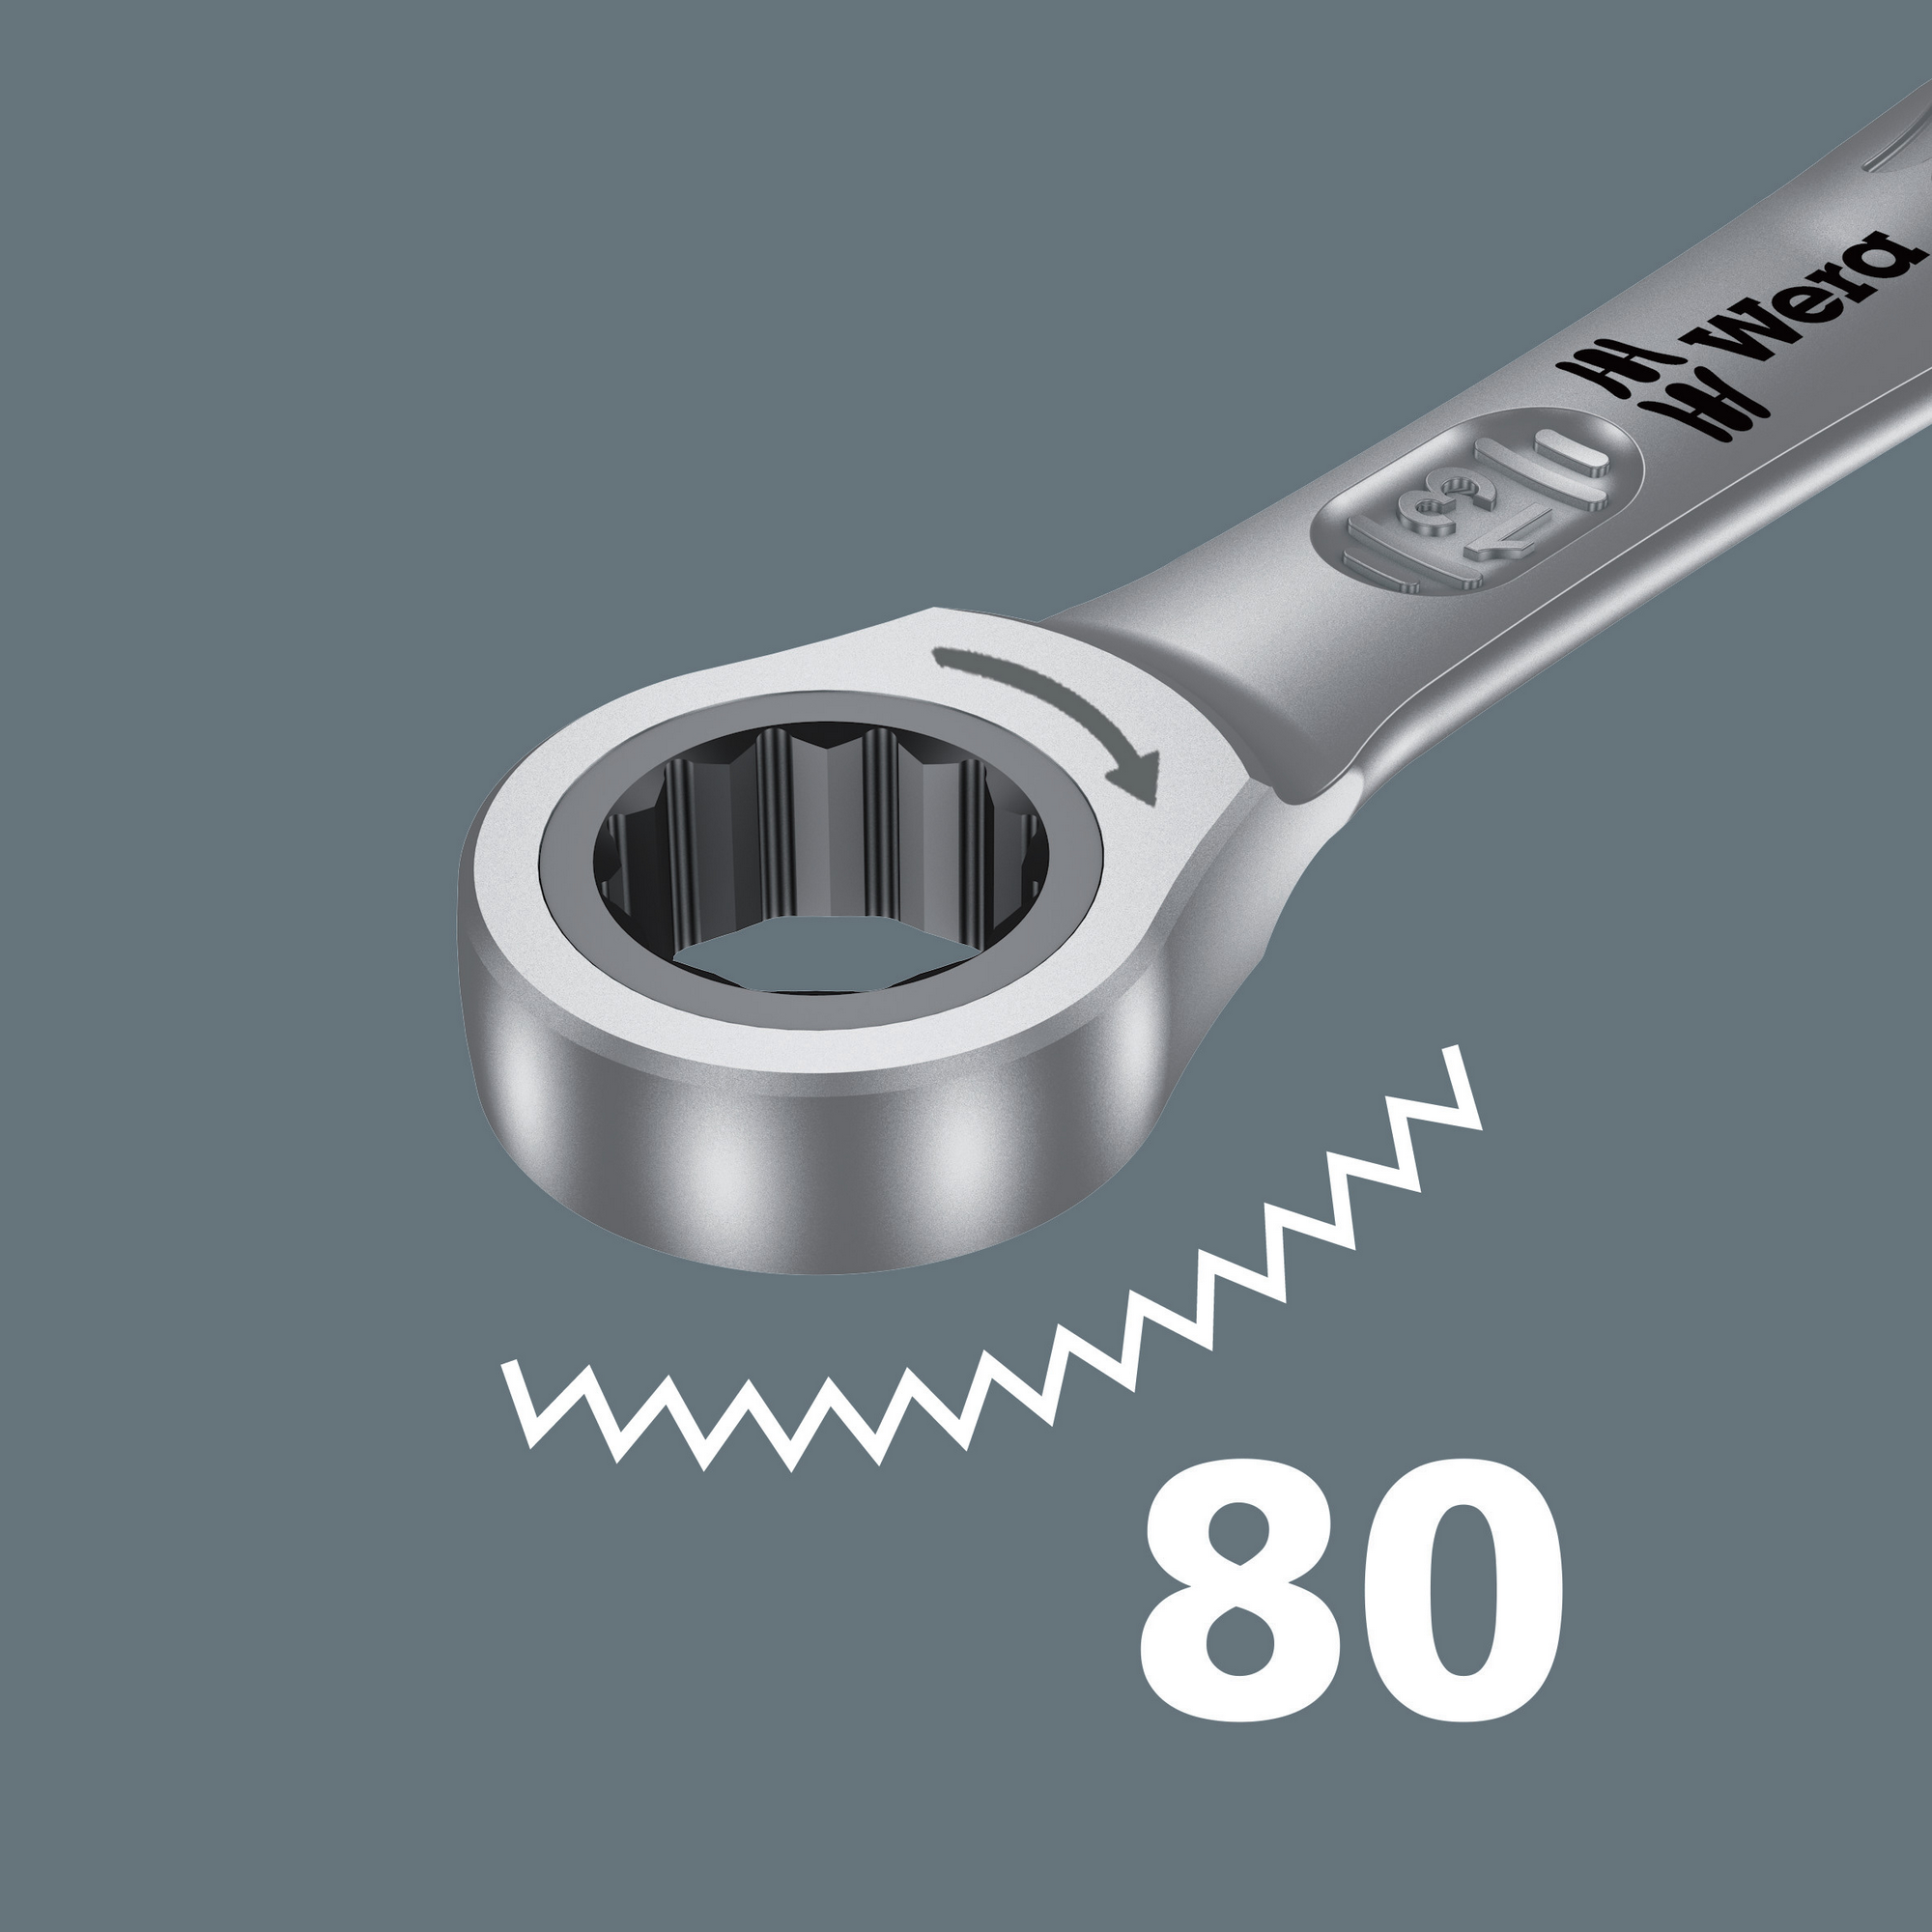 Maul-Ringratschen-Schlüssel 'Joker' 10 mm + product picture